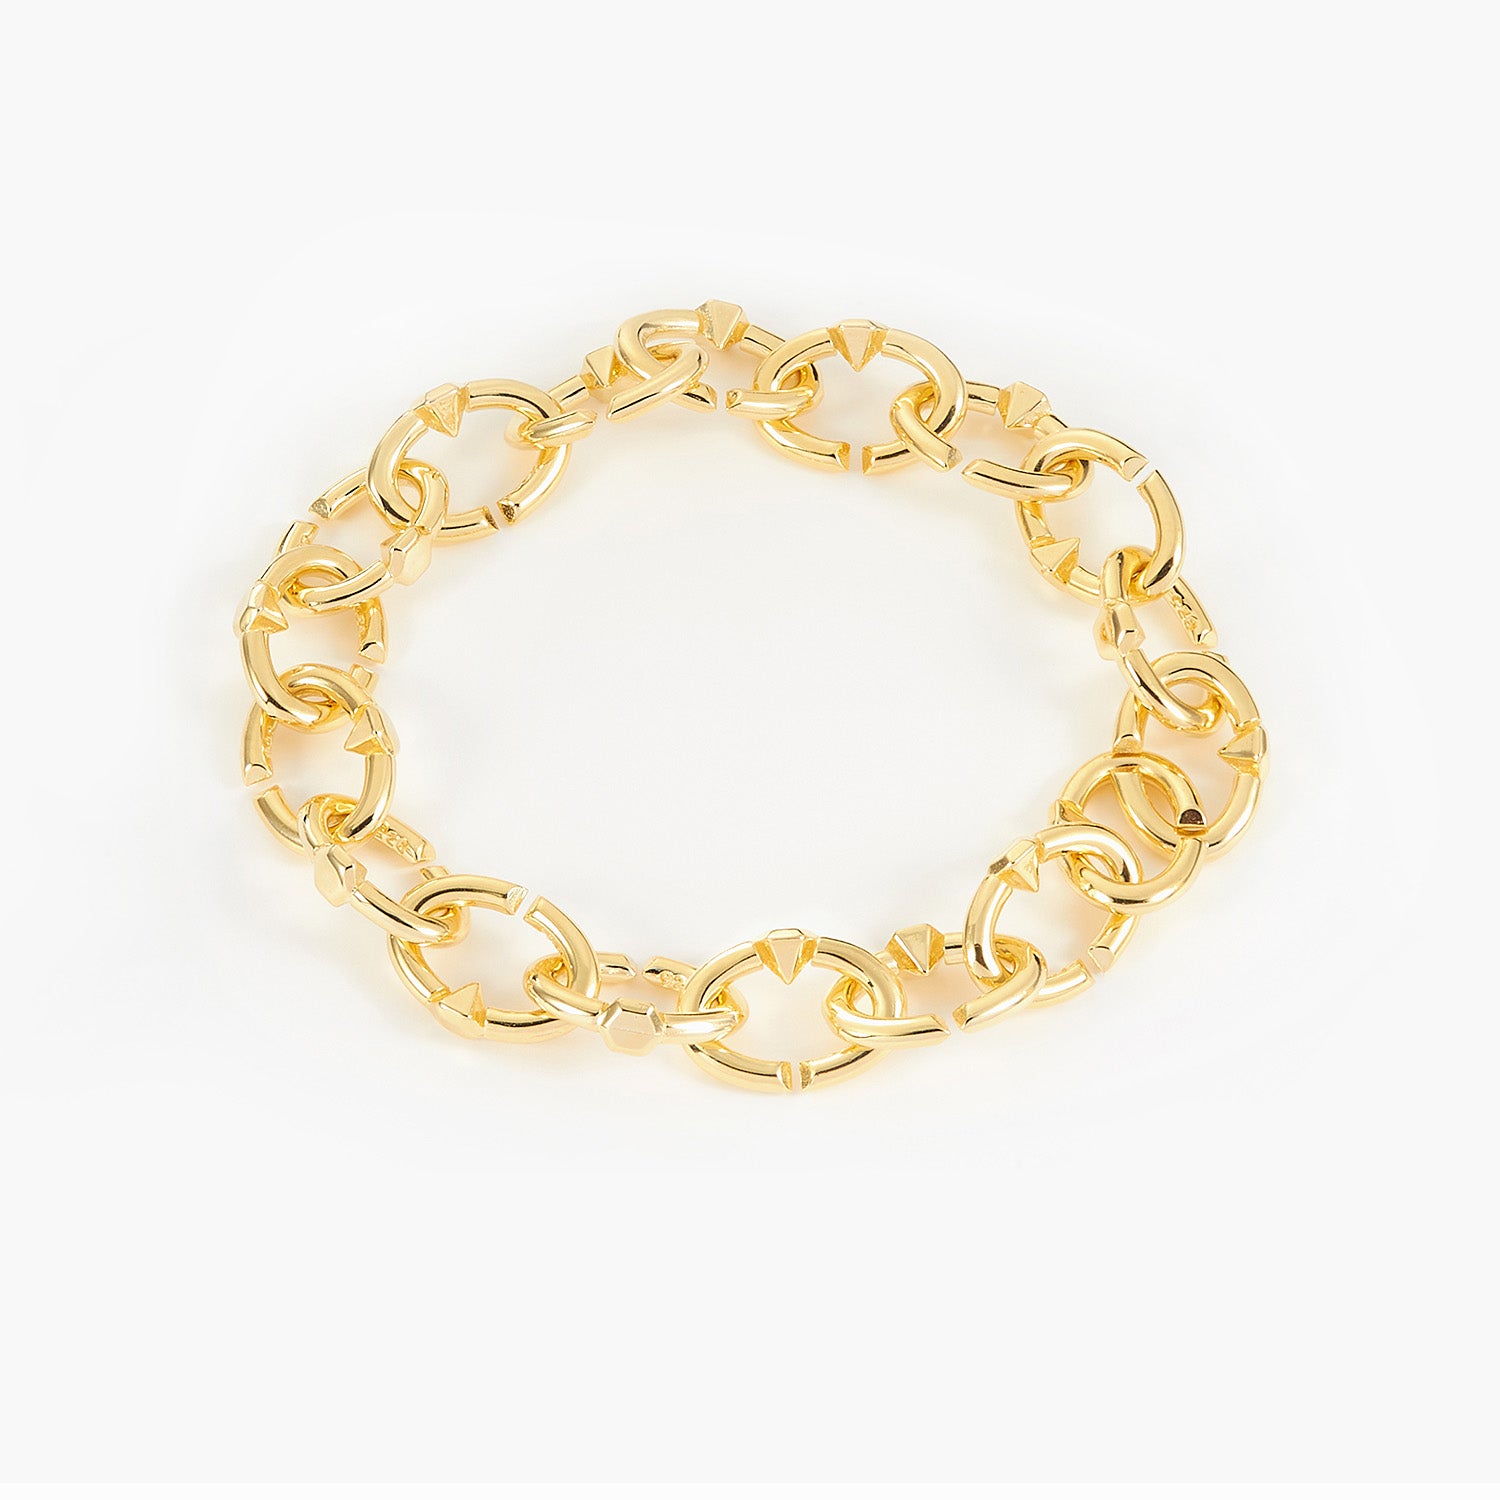 Unique Chain Bracelet